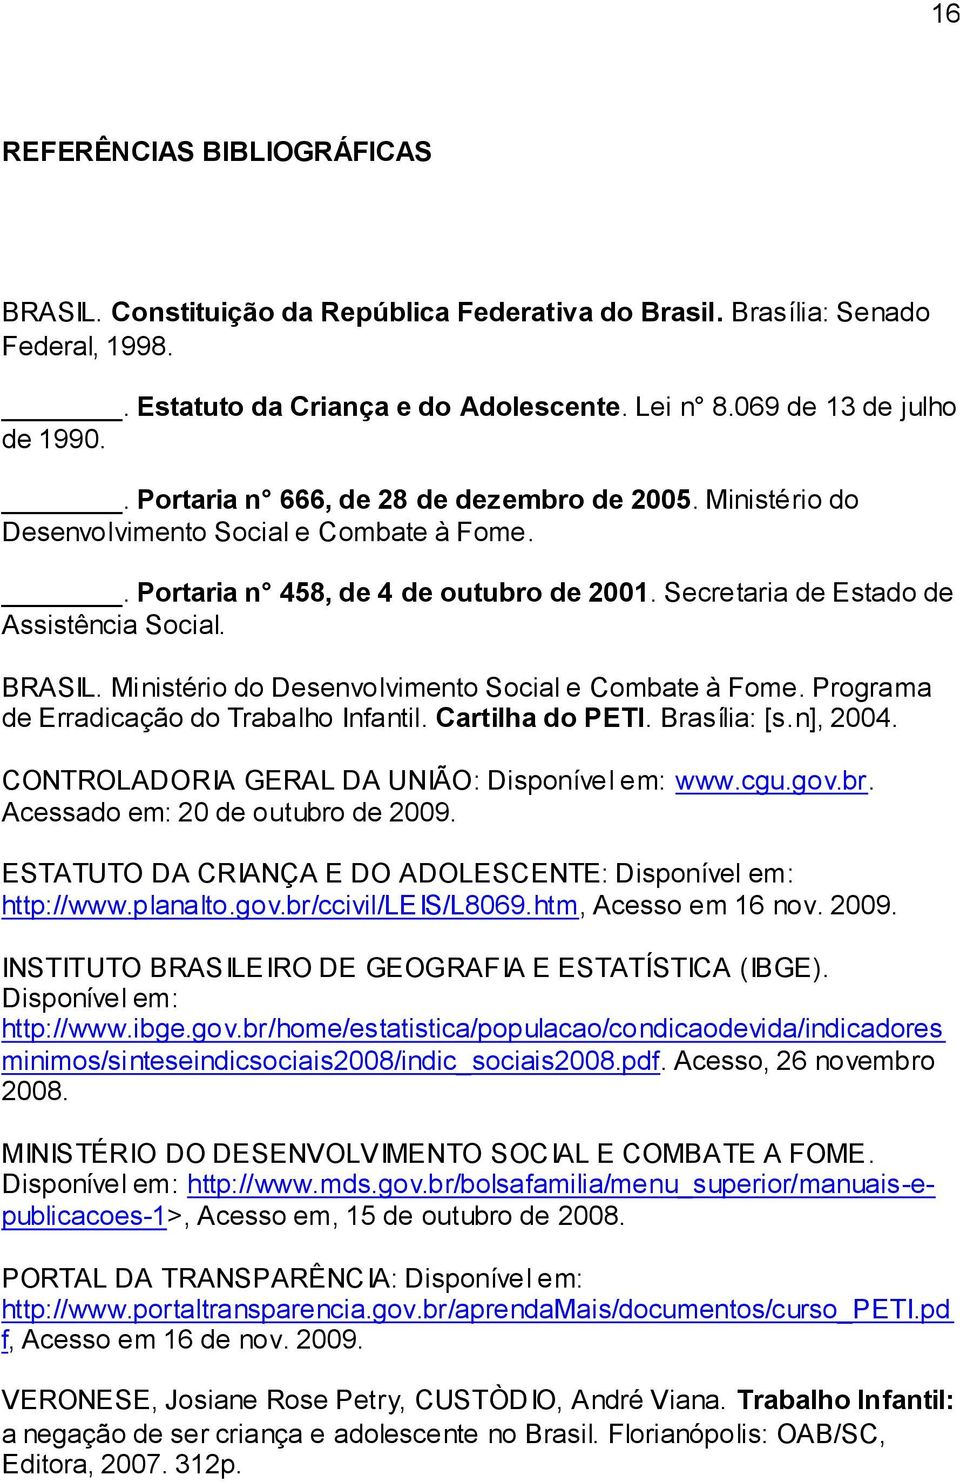 Ministério do Desenvolvimento Social e Combate à Fome. Programa de Erradicação do Trabalho Infantil. Cartilha do PETI. Brasília: [s.n], 2004. CONTROLADORIA GERAL DA UNIÃO: Disponível em: www.cgu.gov.